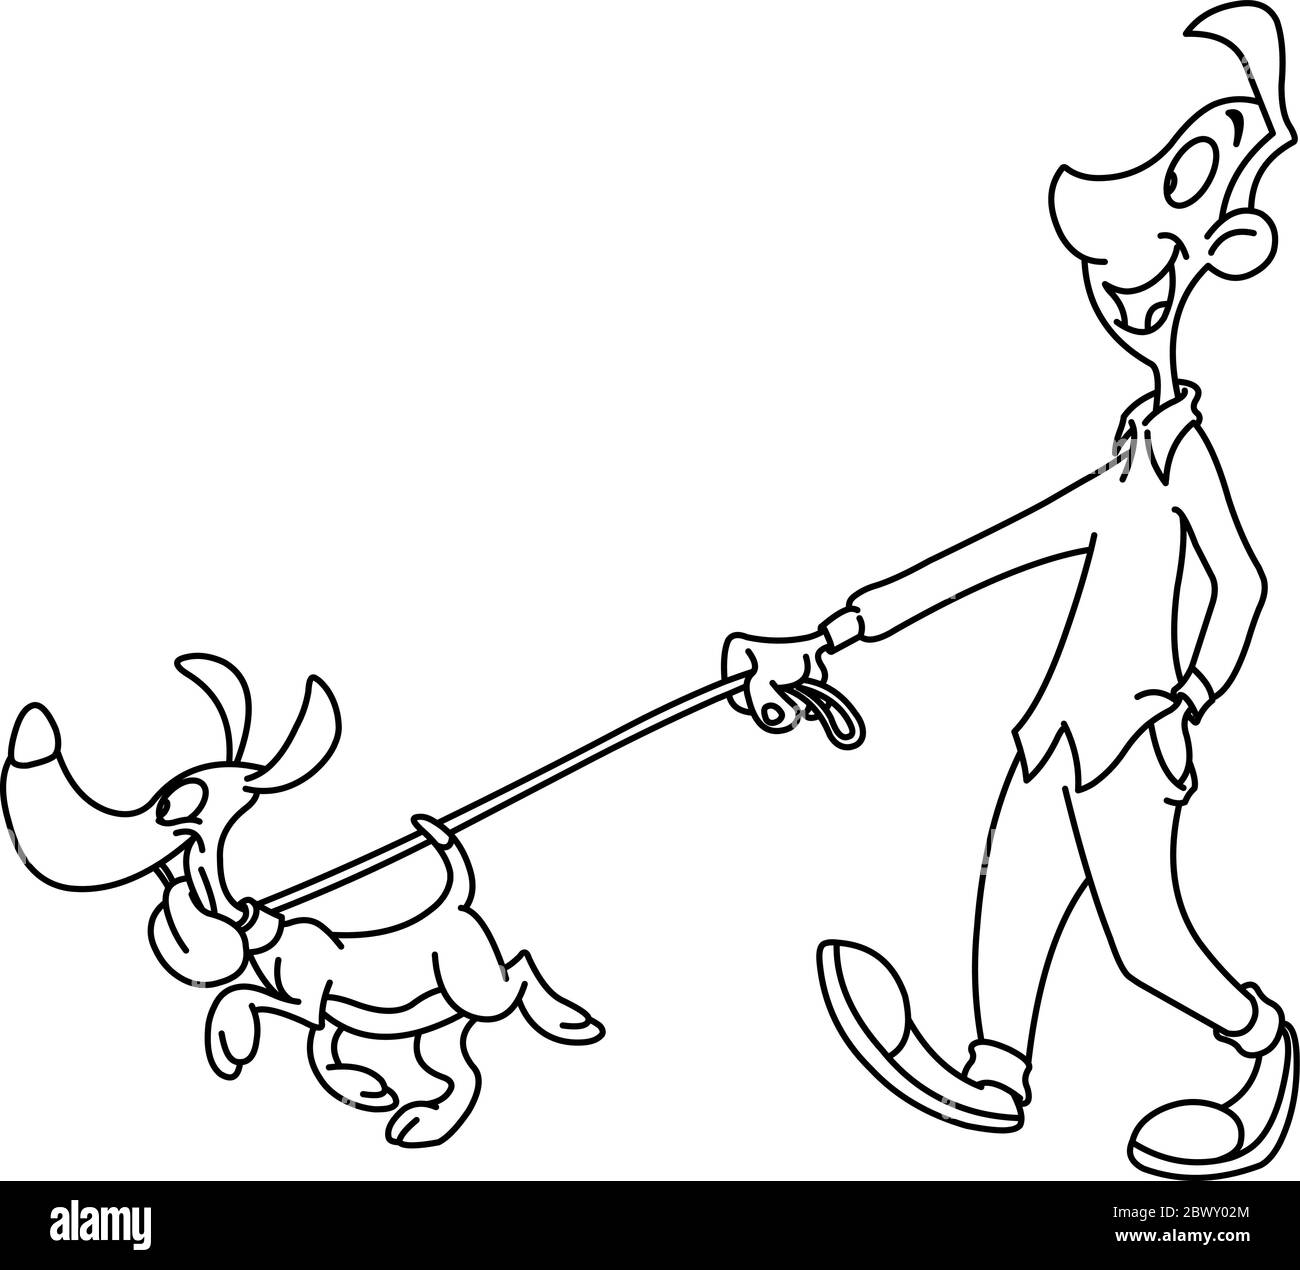 Homme décrit chien de marche. Page de coloriage d'illustration d'illustration d'illustration vectorielle. Illustration de Vecteur